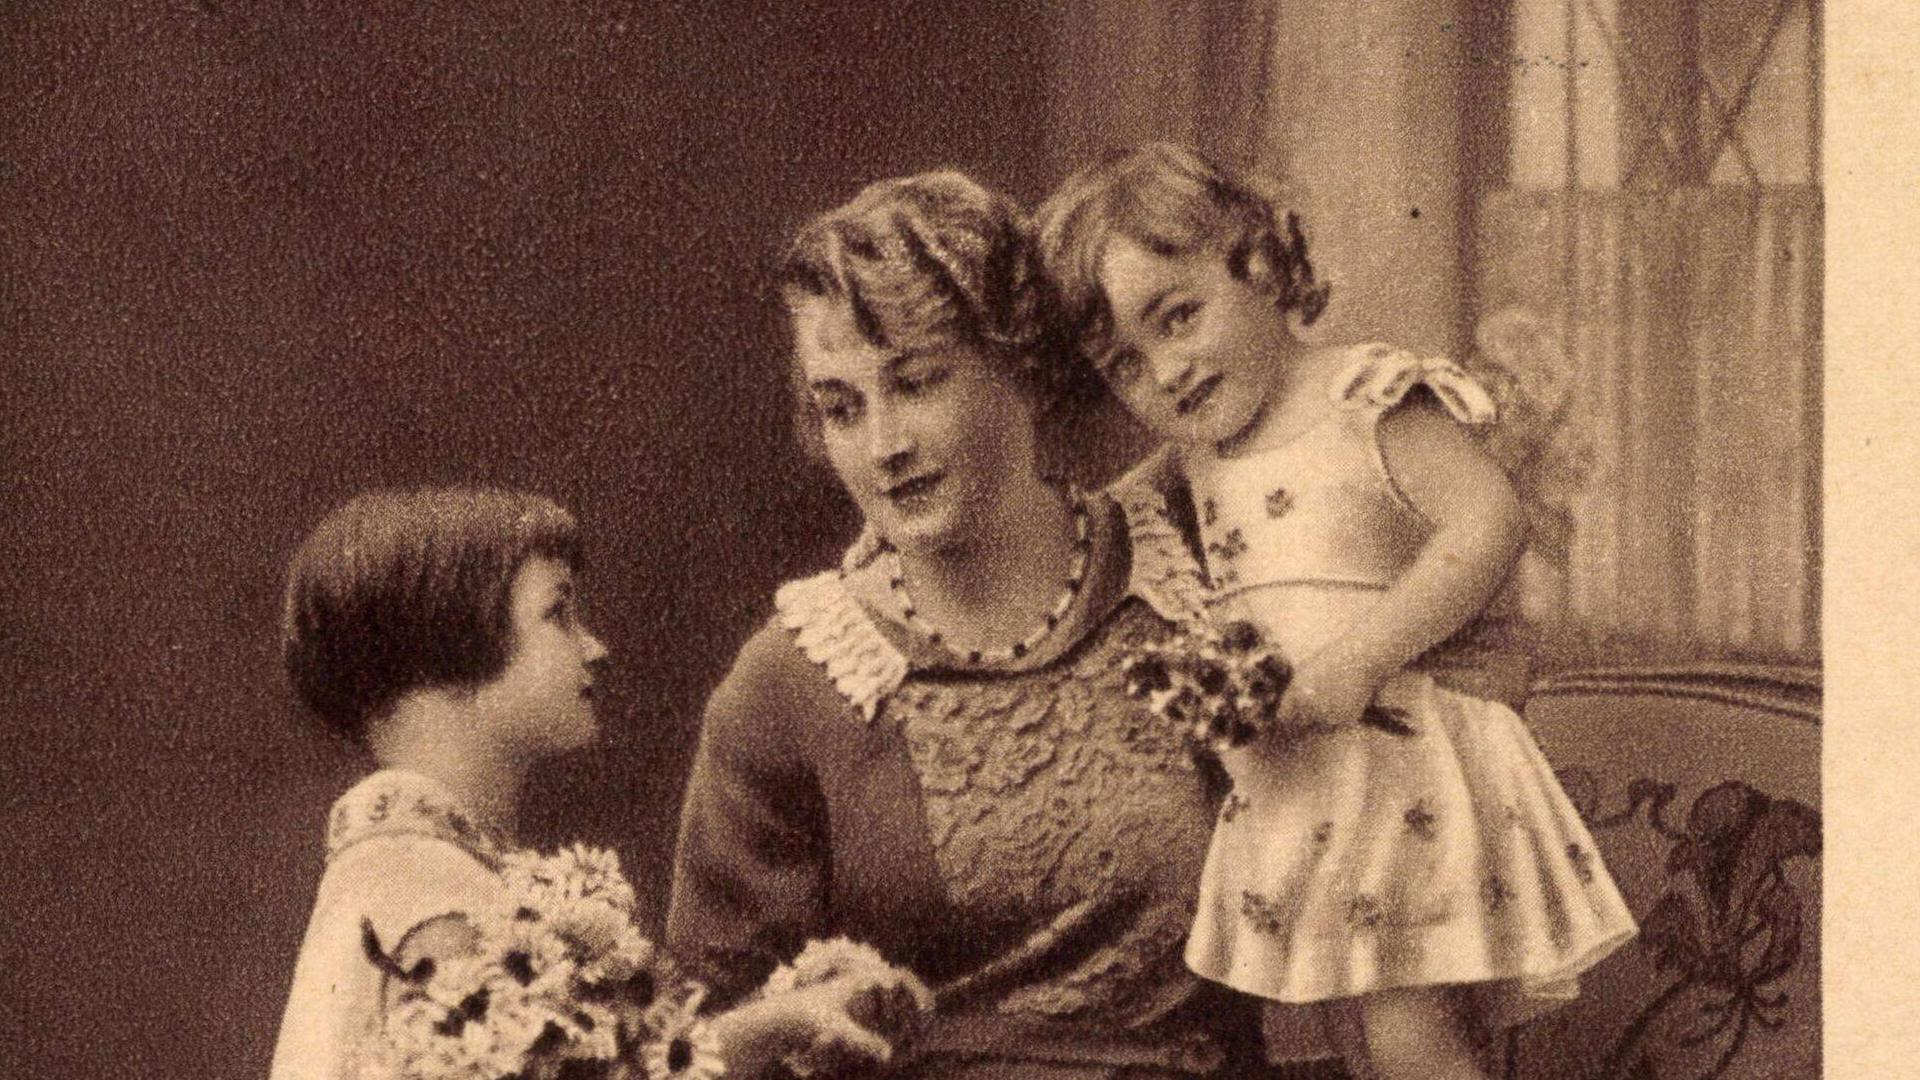 "Wir stellen und mit Liebe ein zum Glückwunsch Muttertag beim besten Mütterlein". Postkarte von 1933